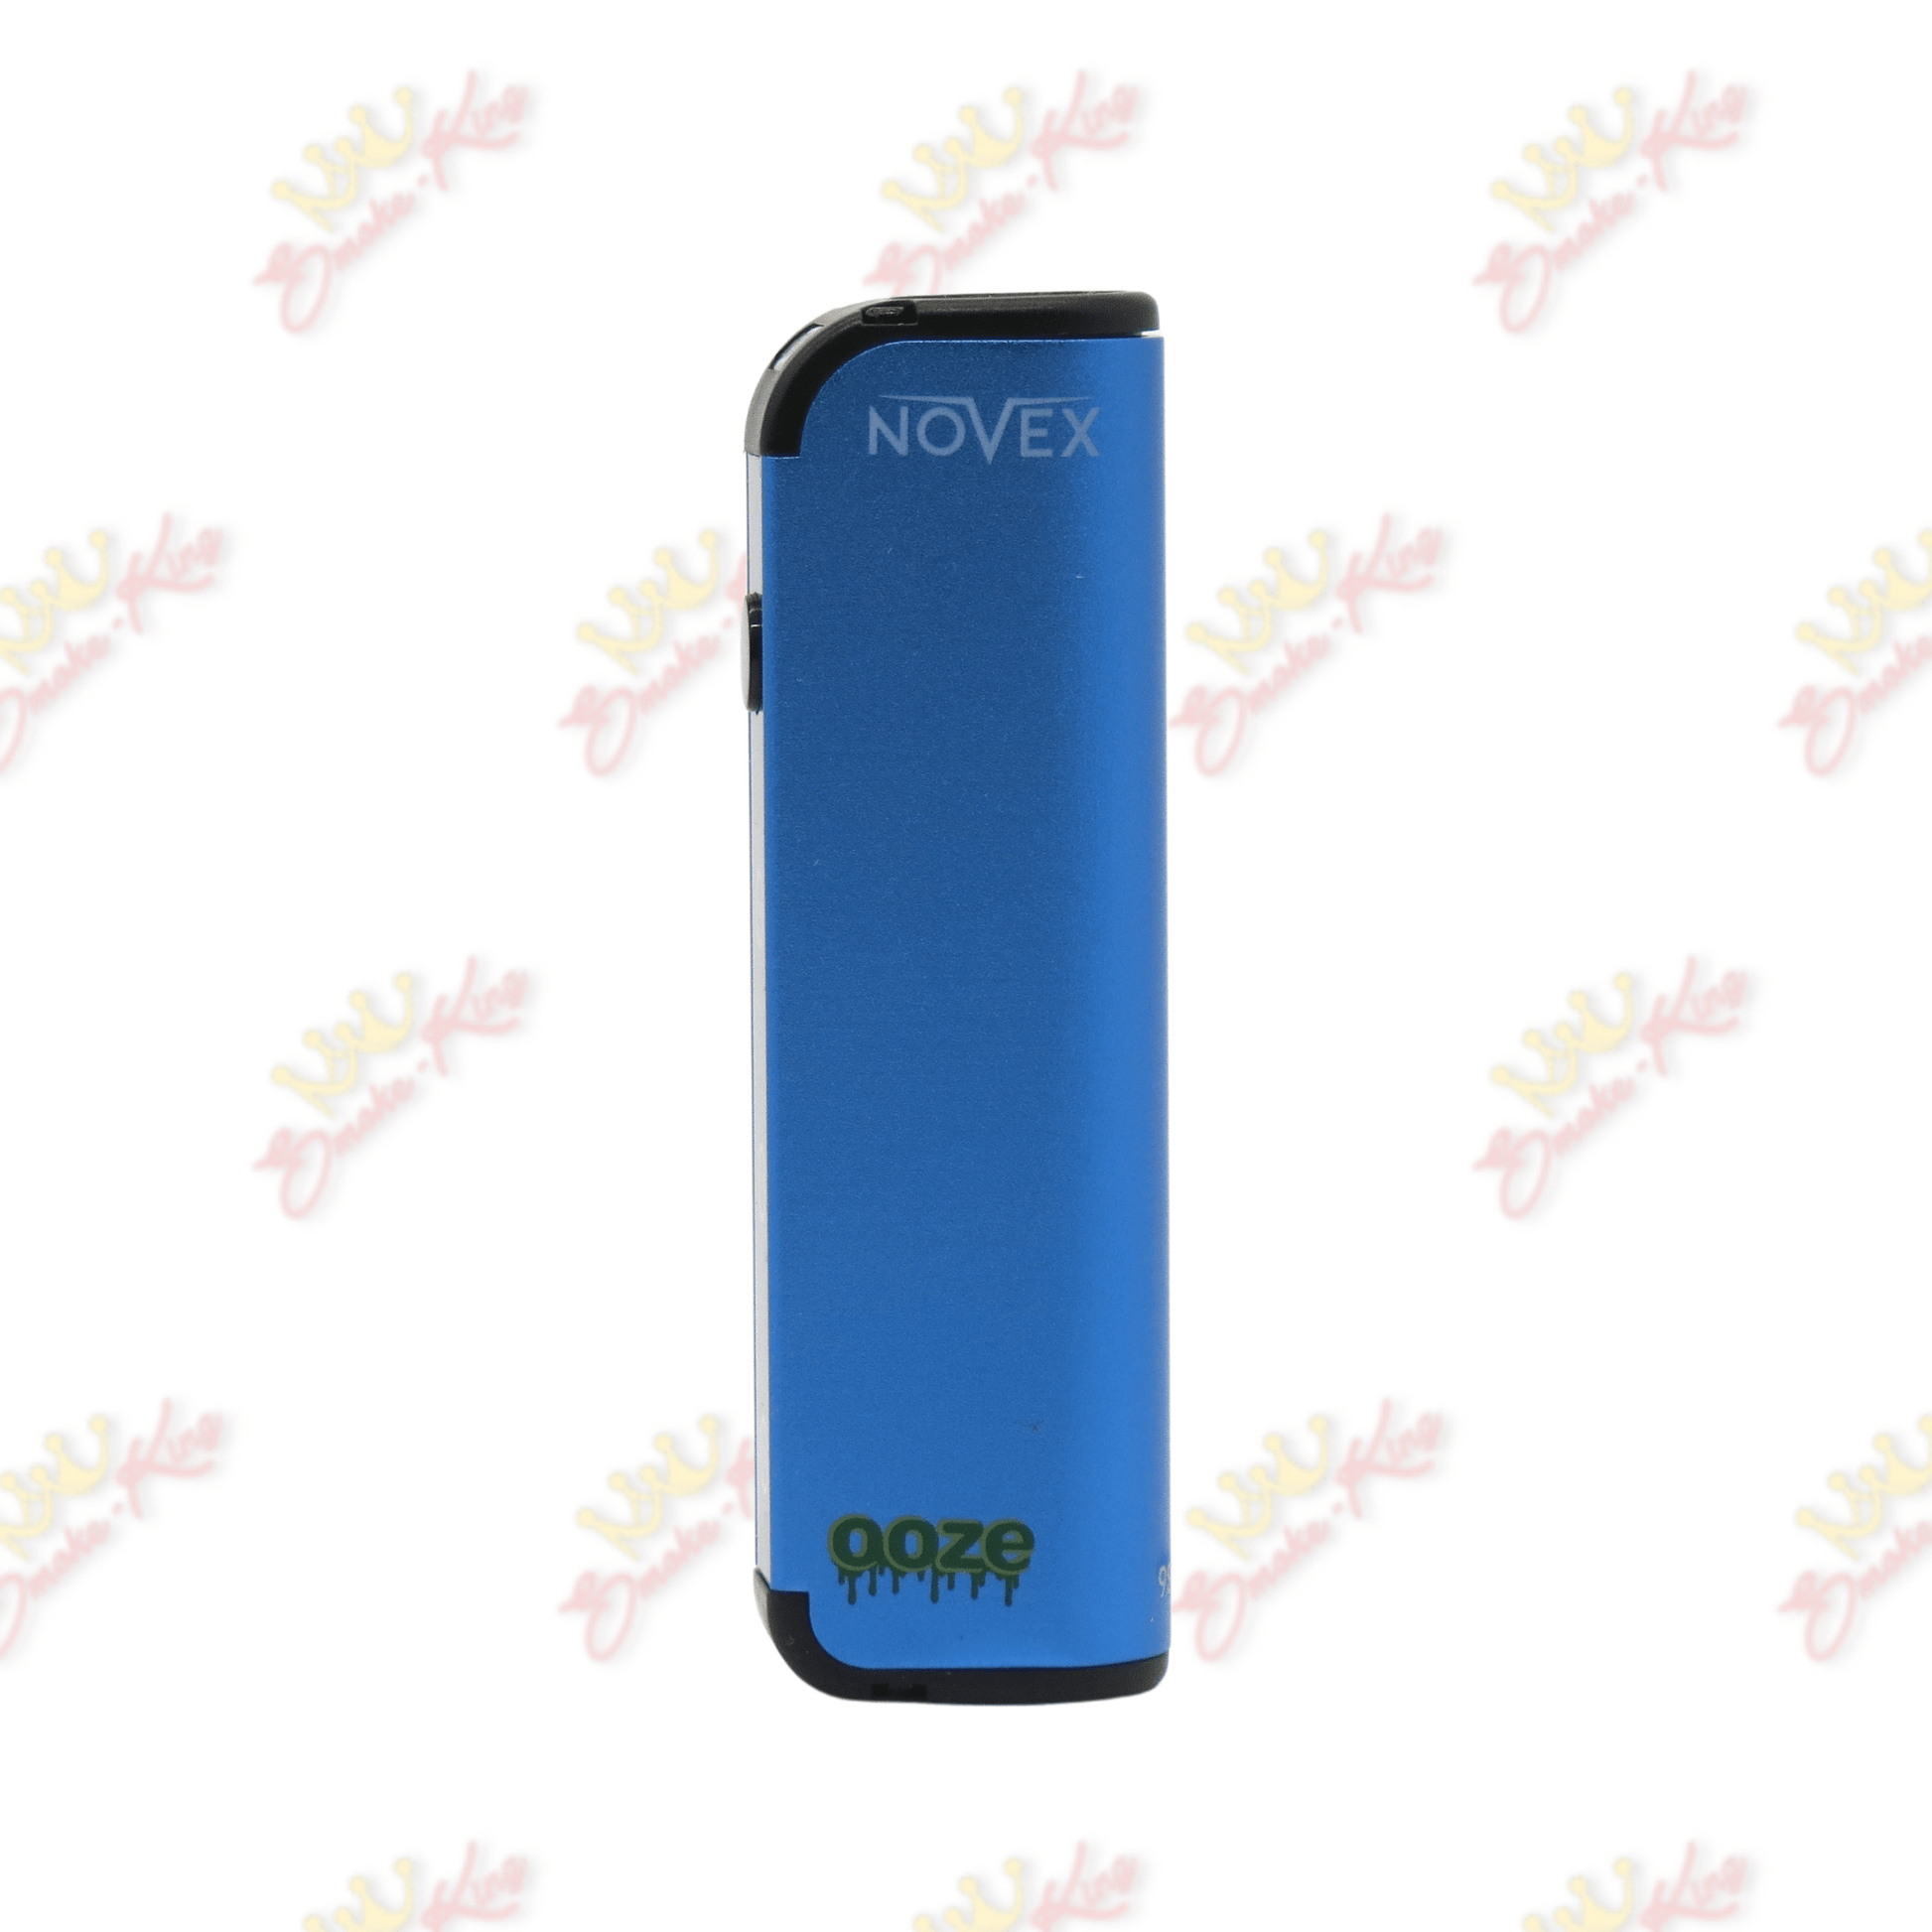 Ooze Blue Ooze Novex Battery Oozed Novex | Cartridge Battery | Smoke King